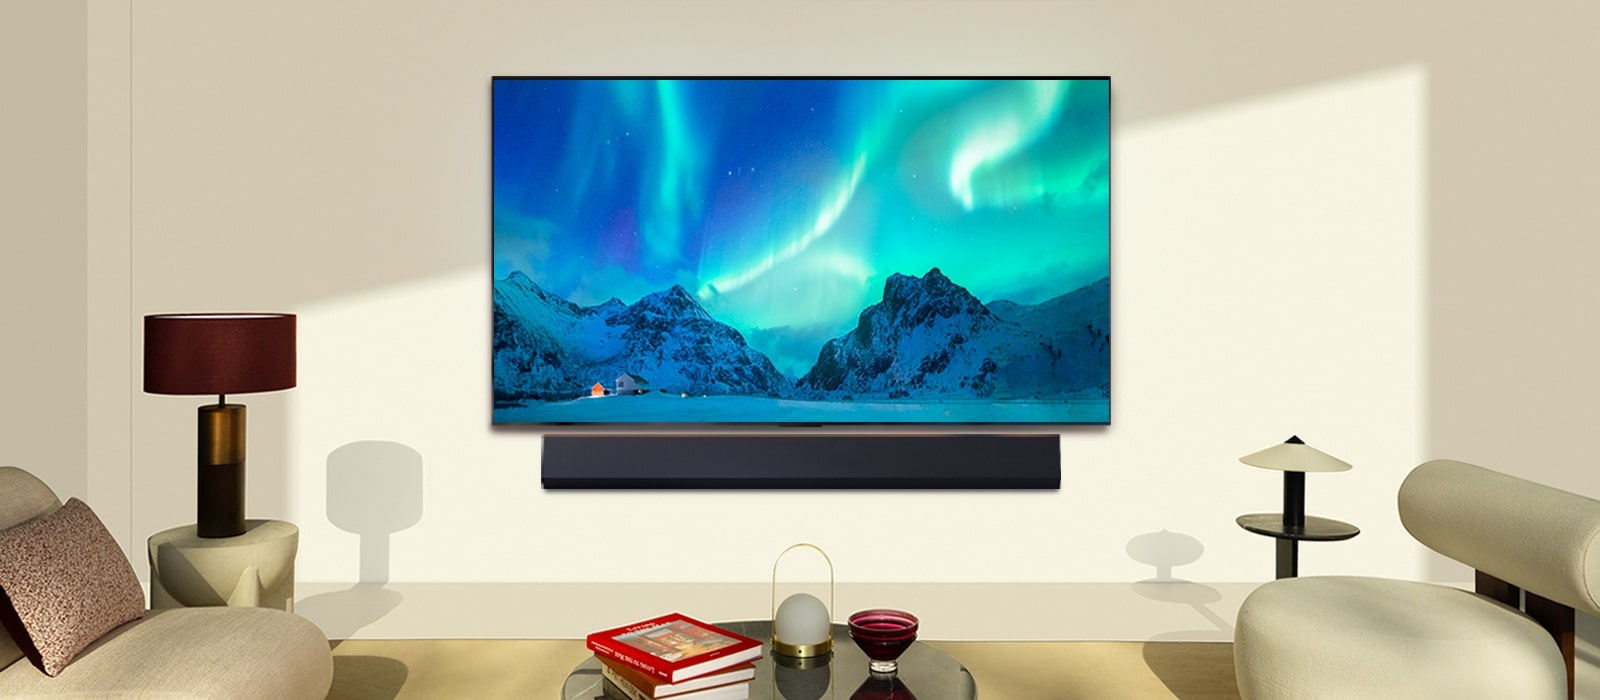 LG OLED TV и LG Soundbar в съвременен дом през деня. На екрана се показва изображението на полярното сияние с идеалното ниво на яркост.